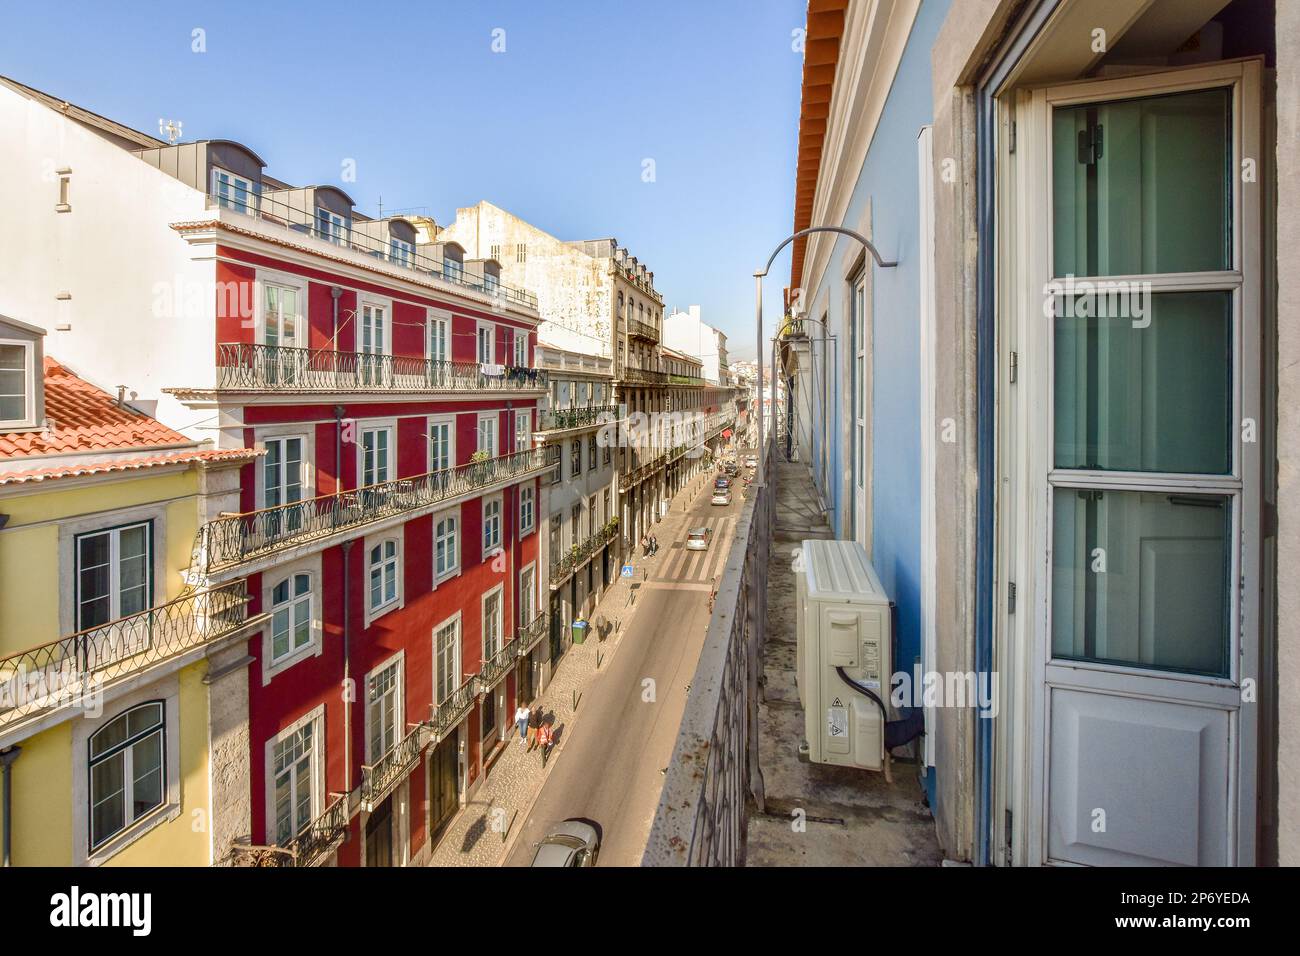 una strada urbana con edifici sullo sfondo e persone che camminano sul marciapiede, come si vede da una finestra del balcone Foto Stock